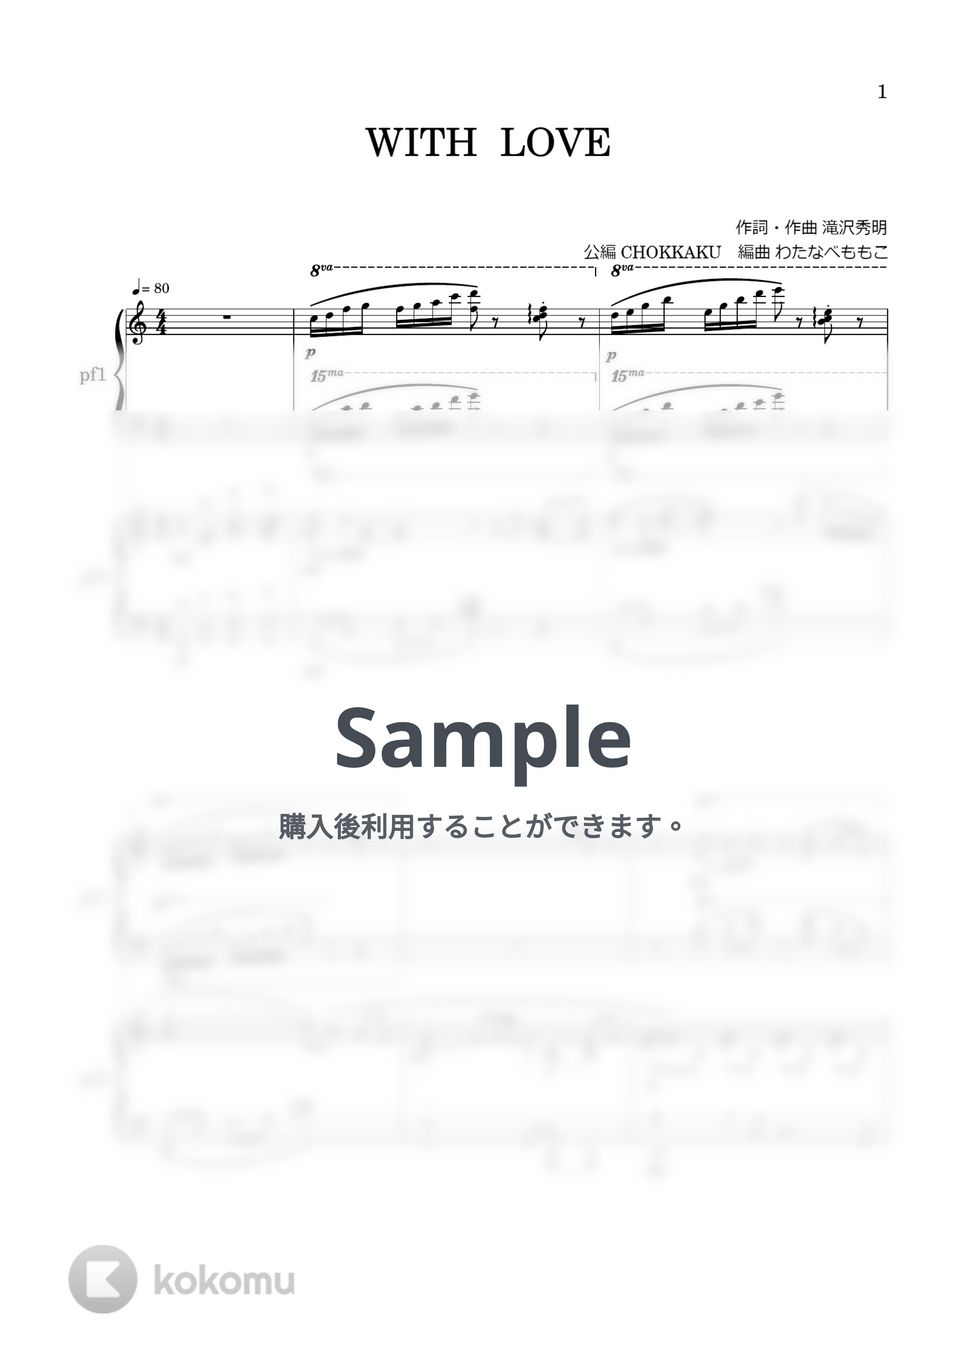 滝沢秀明 - WITH LOVE (2台ピアノ) by わたなべももこ